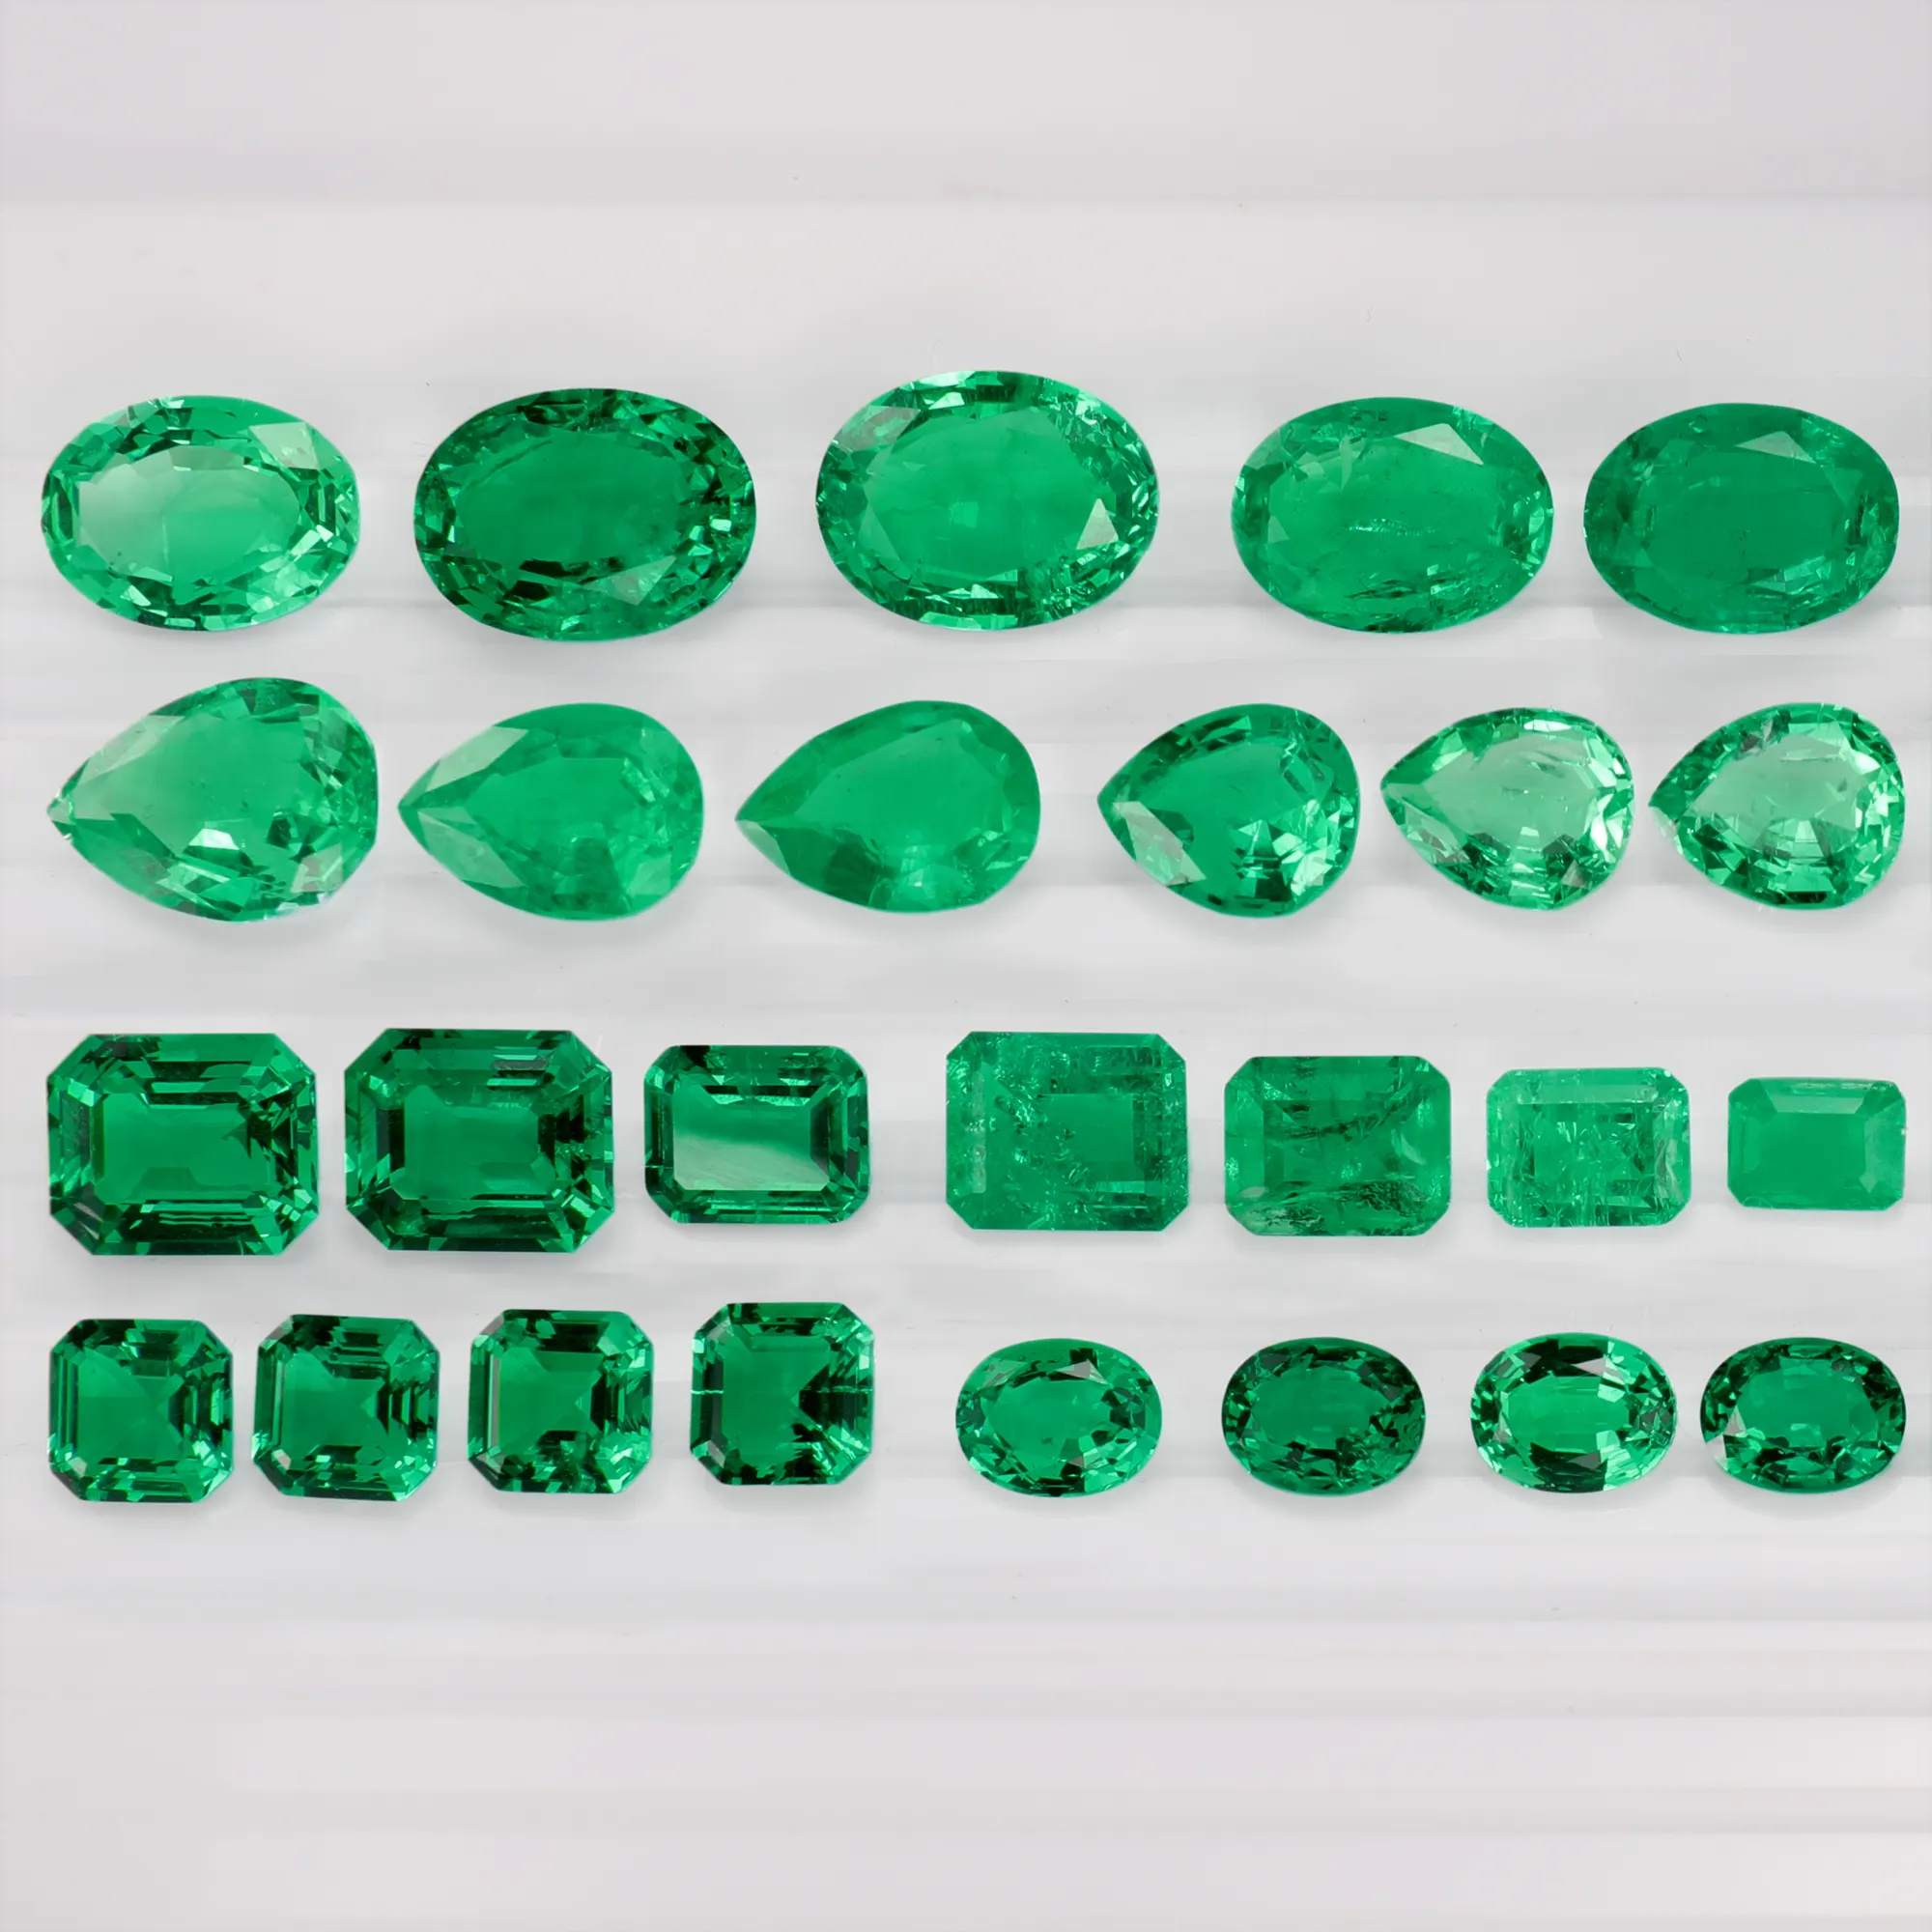 Hailer-مجوهرات نسائية, بسعر الجملة من قبل قيراط GRA معتمد من الهيدروحراري الزمرد الكولومبي مختبر أخضر تنمو الزمرد أحجار كريمة فضفاضة